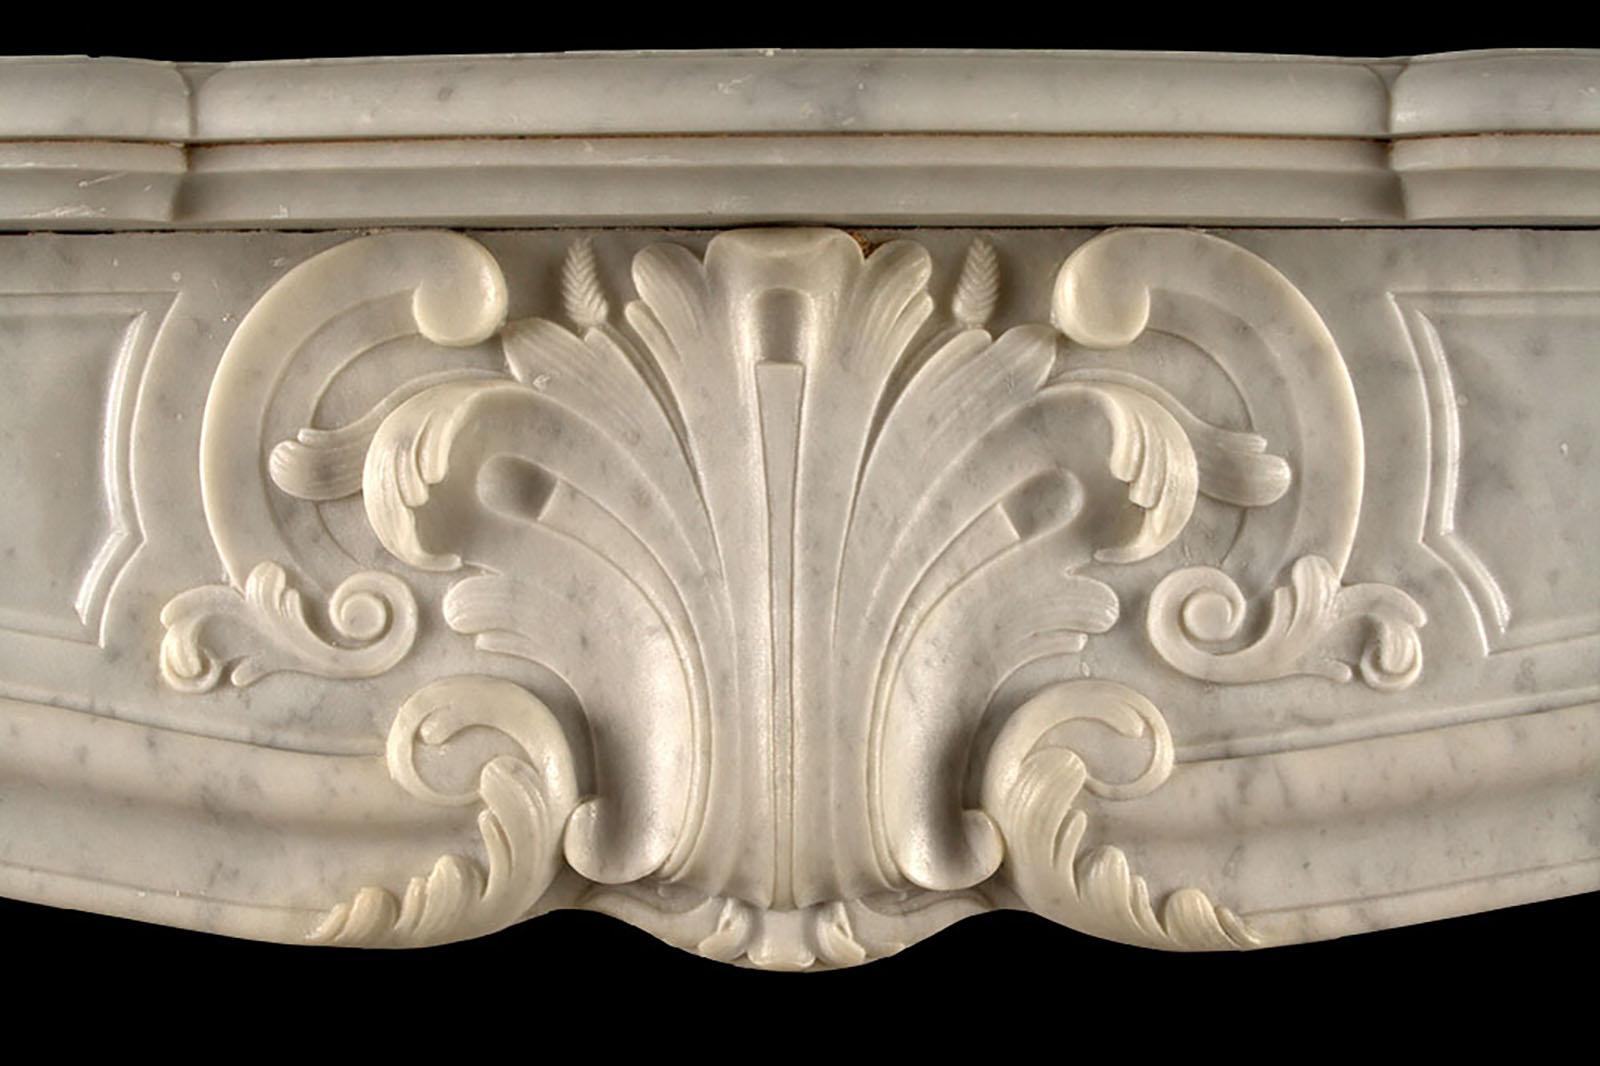 Grande cheminée ancienne Louis XV de style rococo

Grande cheminée ancienne de style Louis XV, finement sculptée en marbre blanc de Carrare à la manière rococo, avec une étagère moulurée en serpentin au-dessus de la frise à panneaux qui est